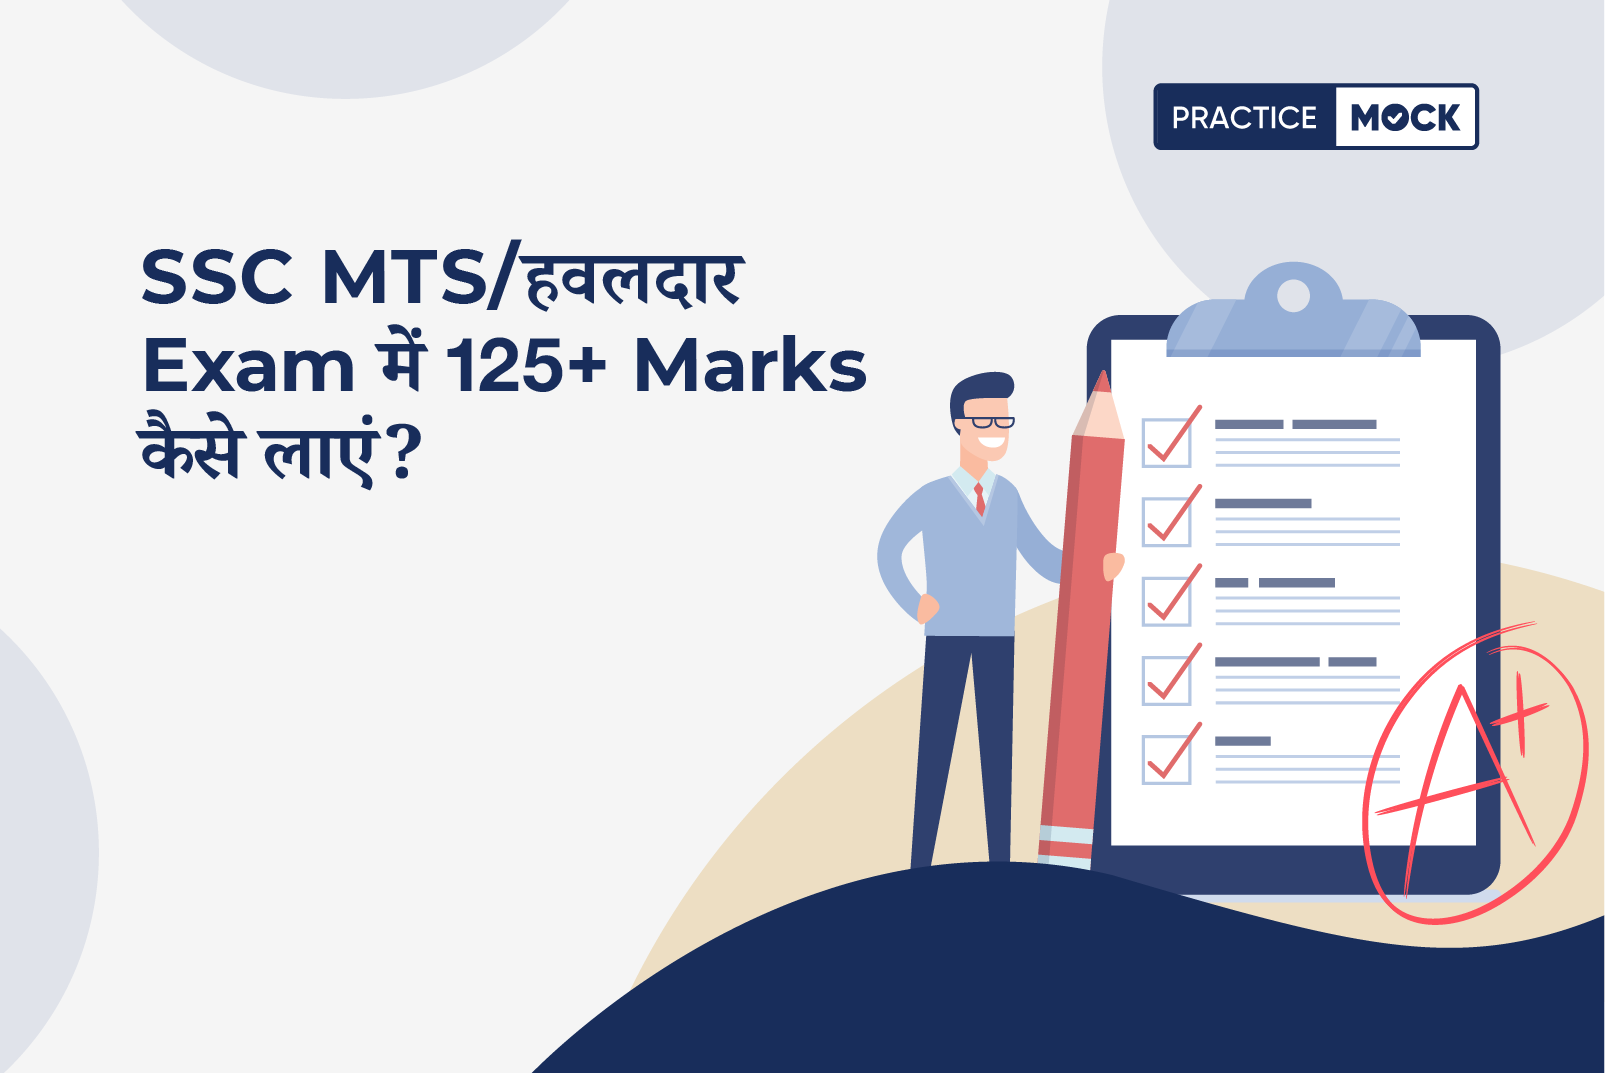 SSC MTS/हवलदार Exam में 125+Marks कैसे लाएं | Final Strategy